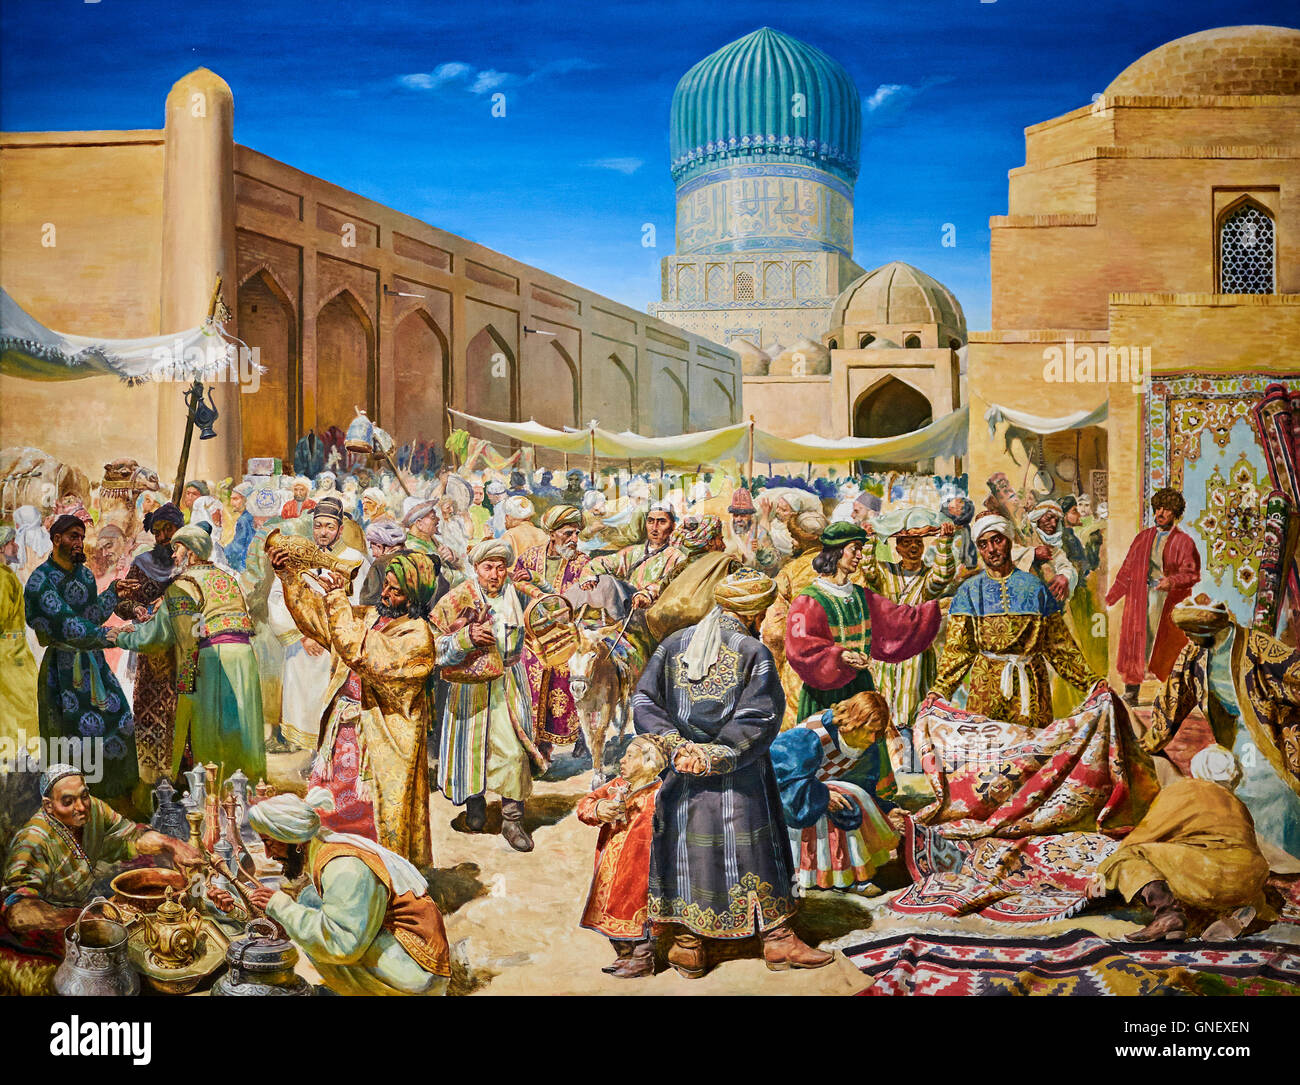 L'Ouzbékistan, Tachkent, Tamerlan Tamerlan, carrés, musée de plein air, un bazar à Samarcand Banque D'Images